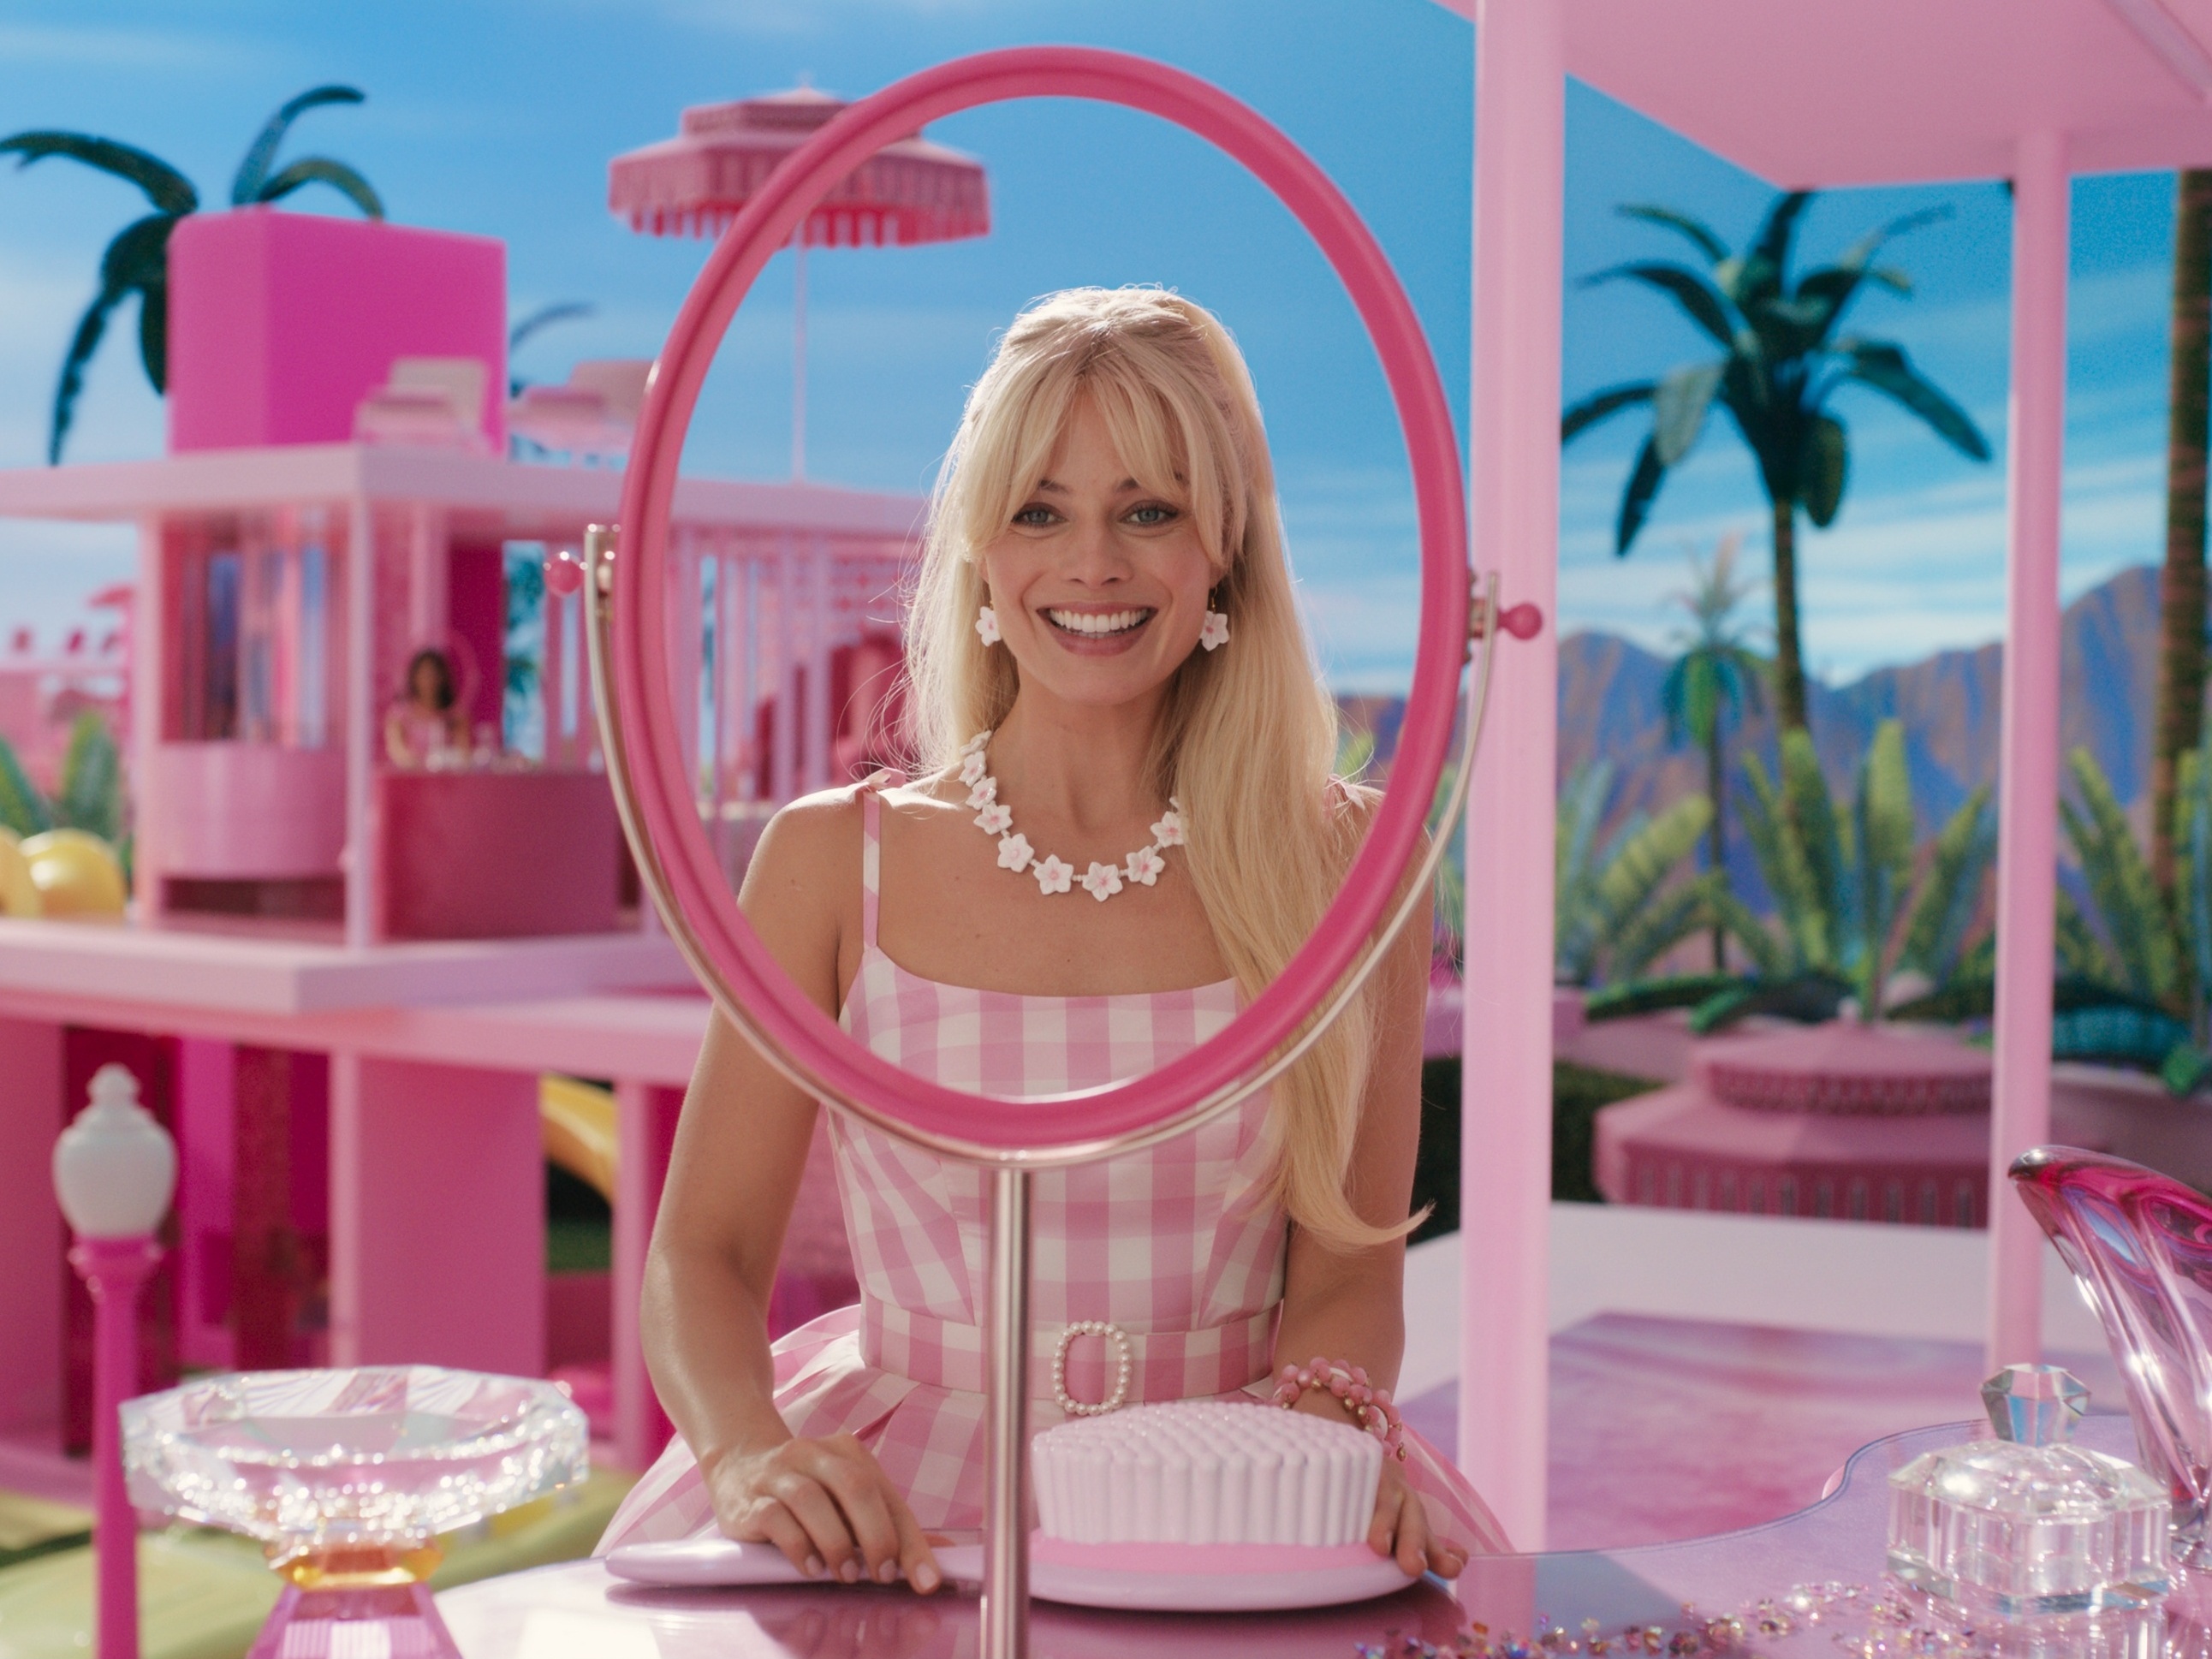 Casa nova para Barbie. Barbie em Português Brasil. Novos jogos